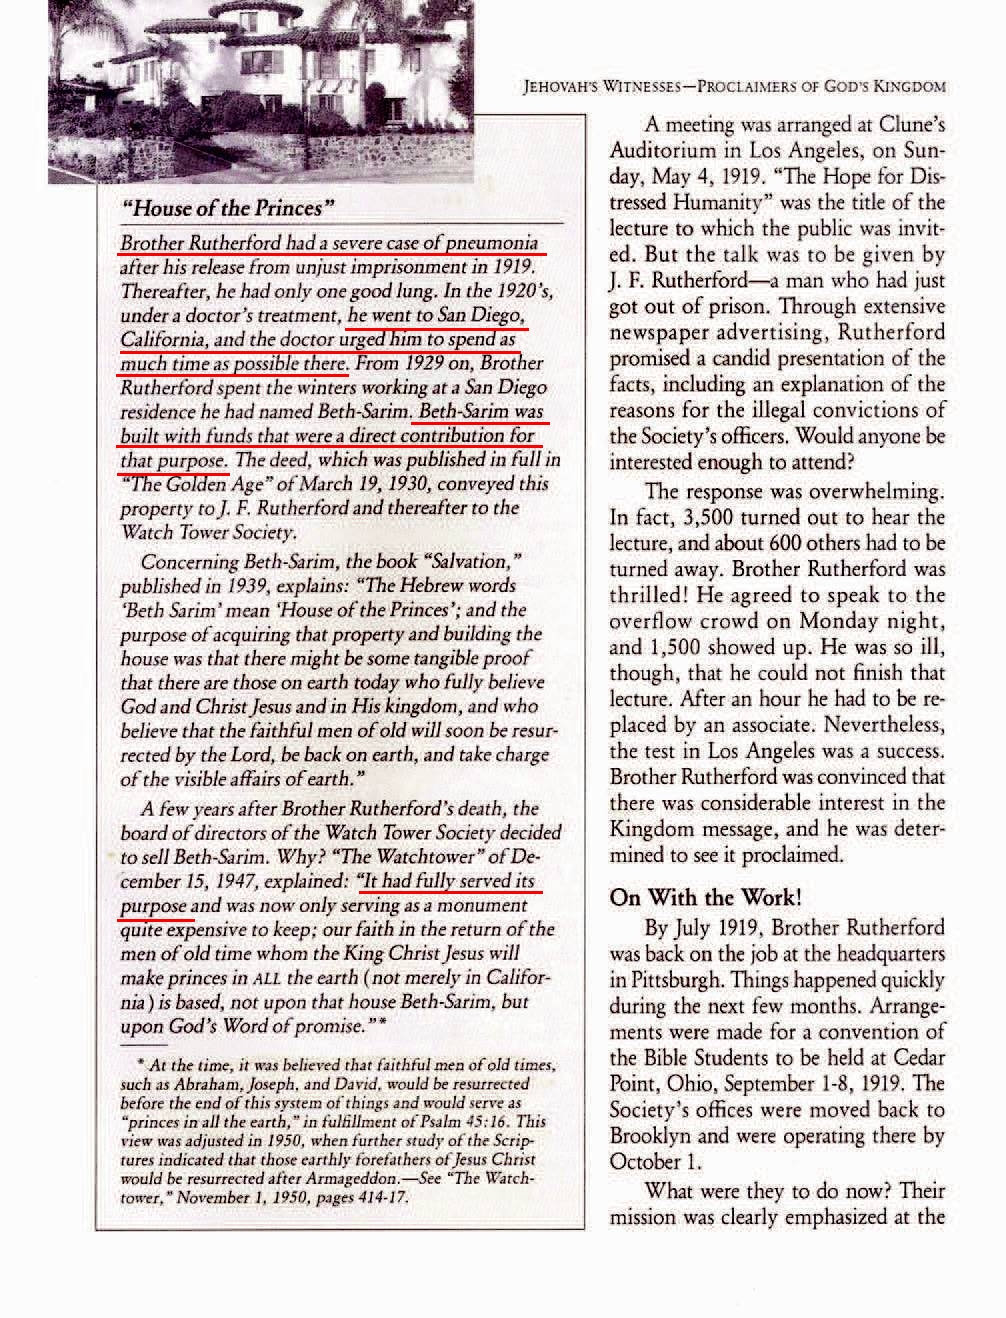 Les fausses prophéties par la Société watch tower - Page 4 7o52